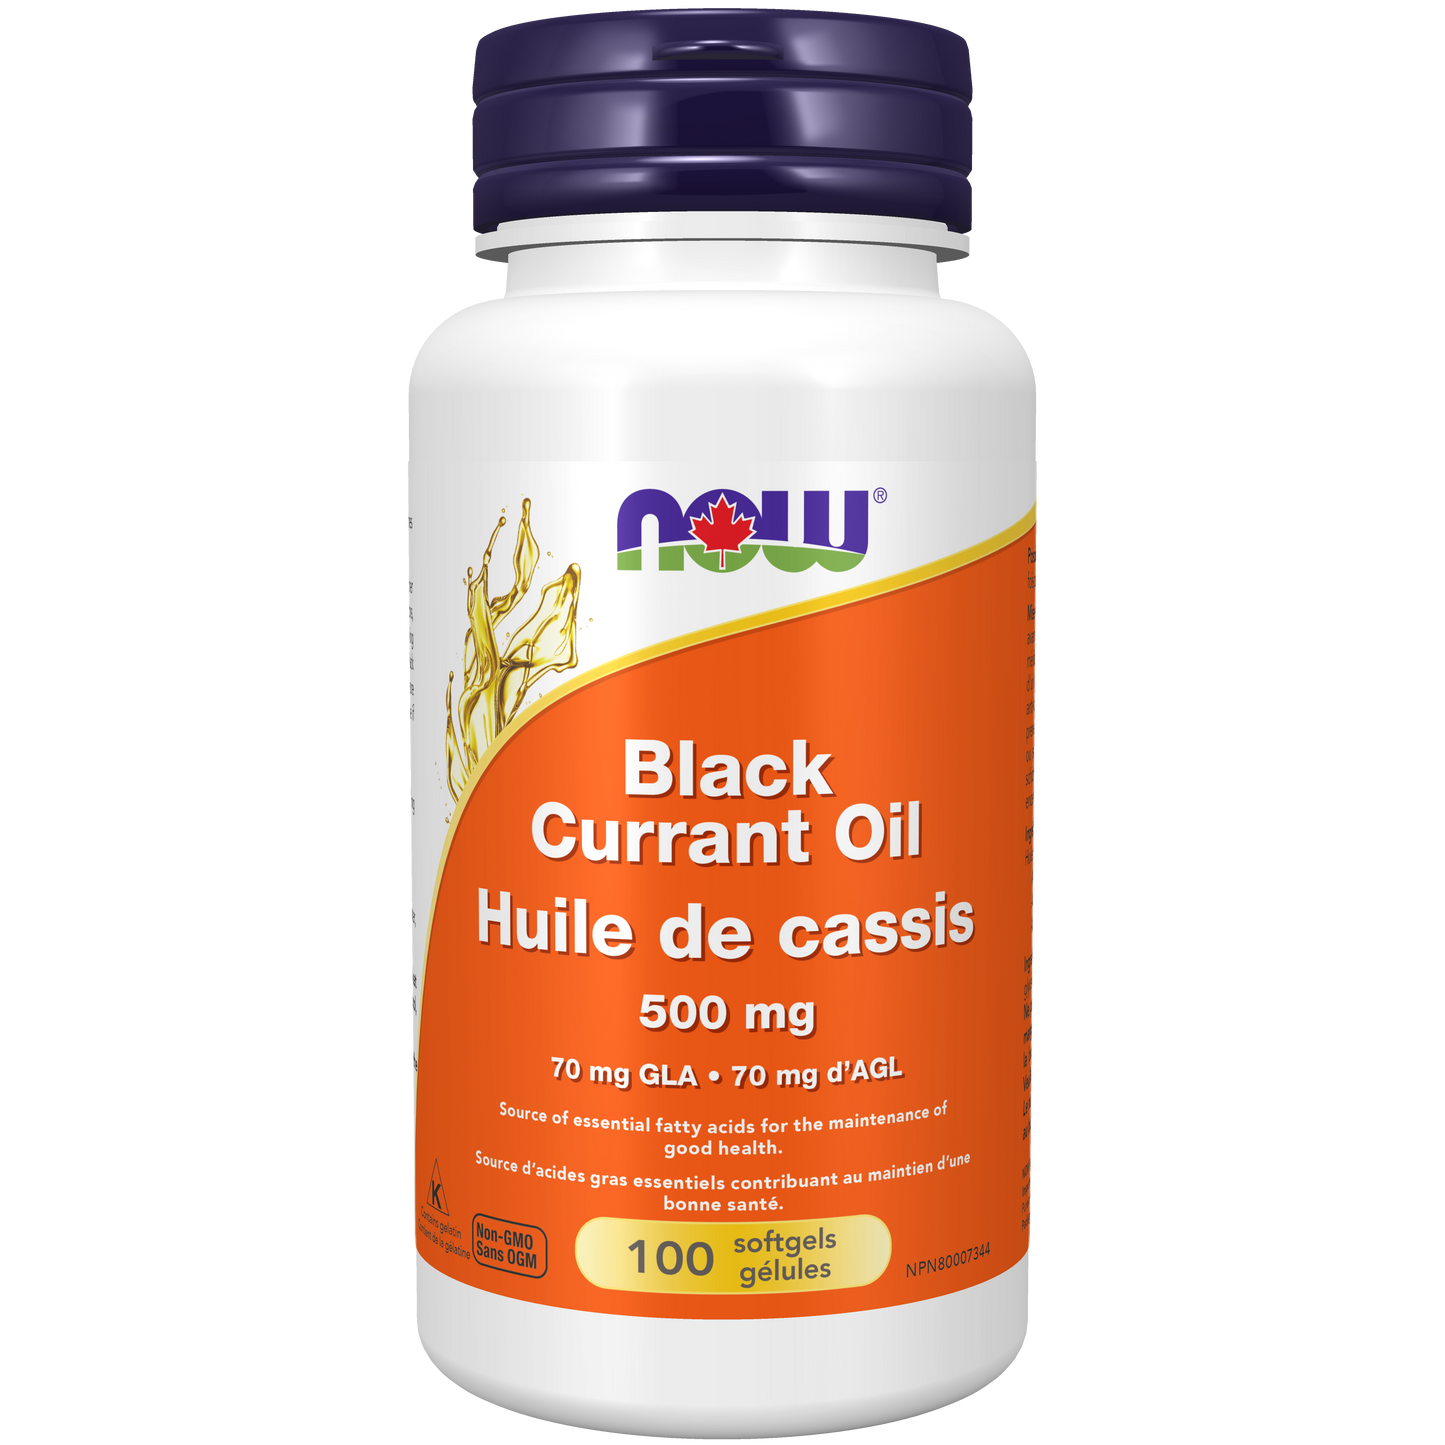 Black Currant Oil 500 mg 100 Softgels